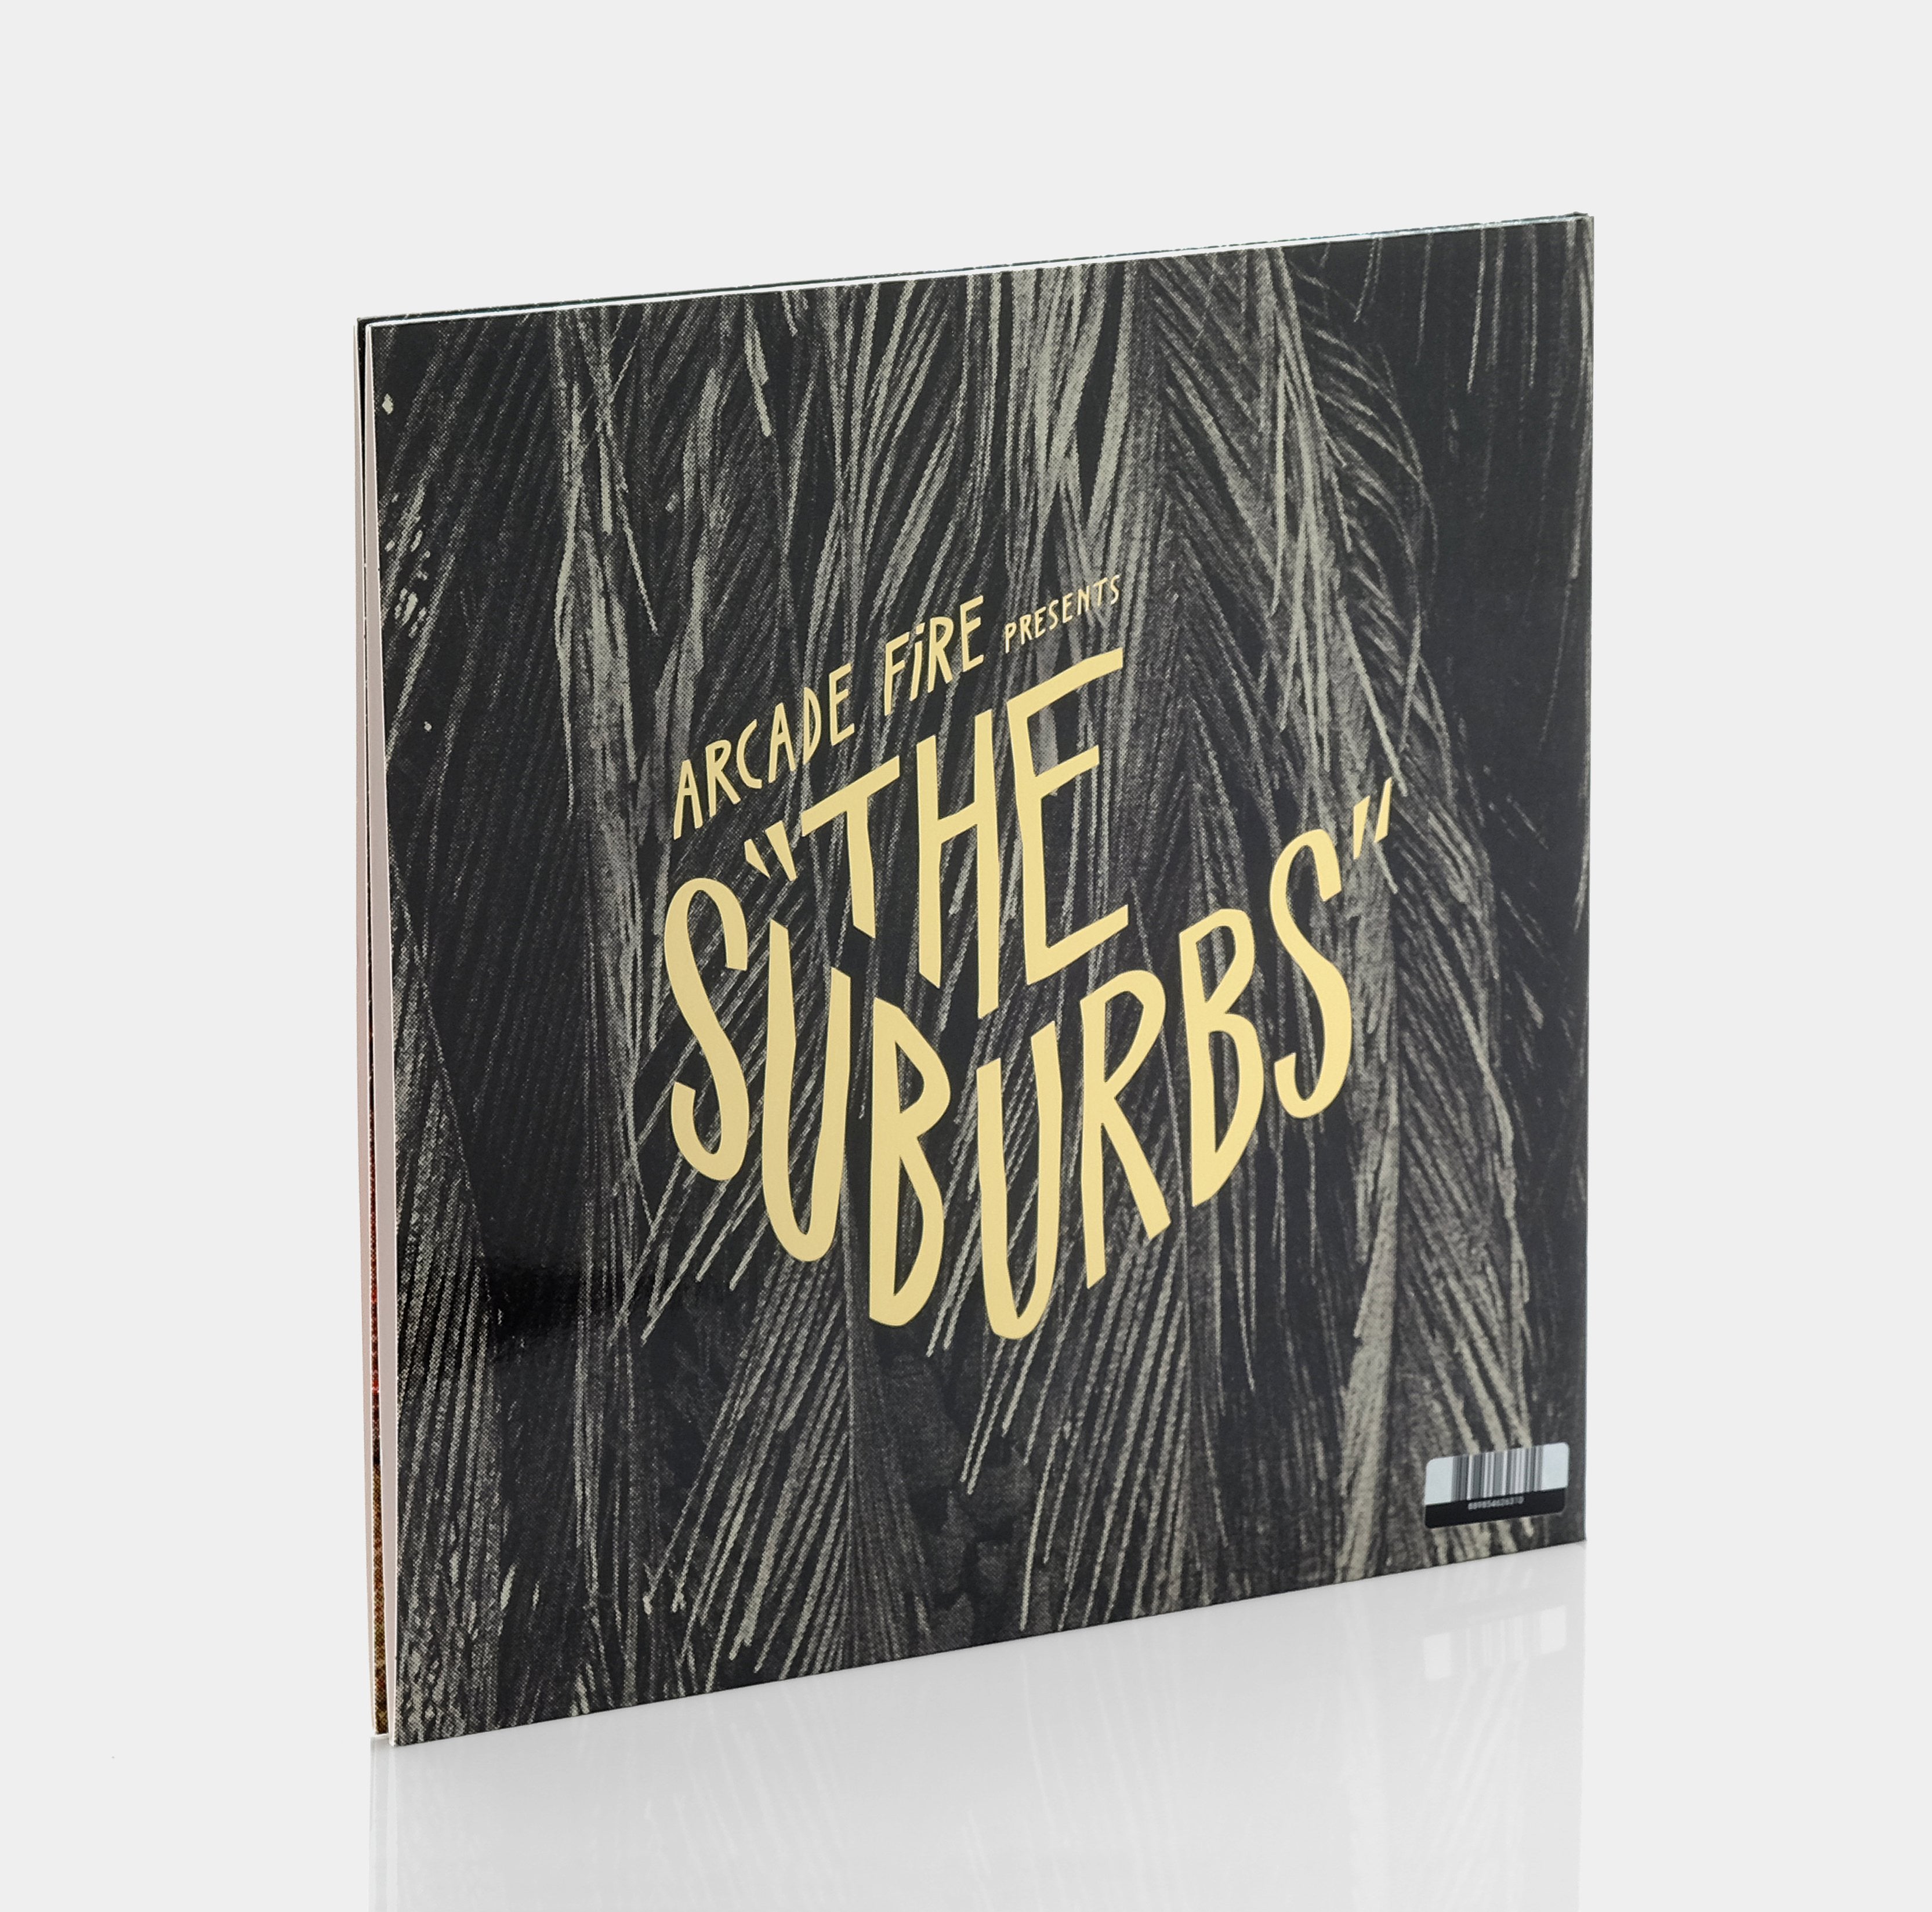 Arcade Fire - The Suburbs 2xLP Vinyl Record